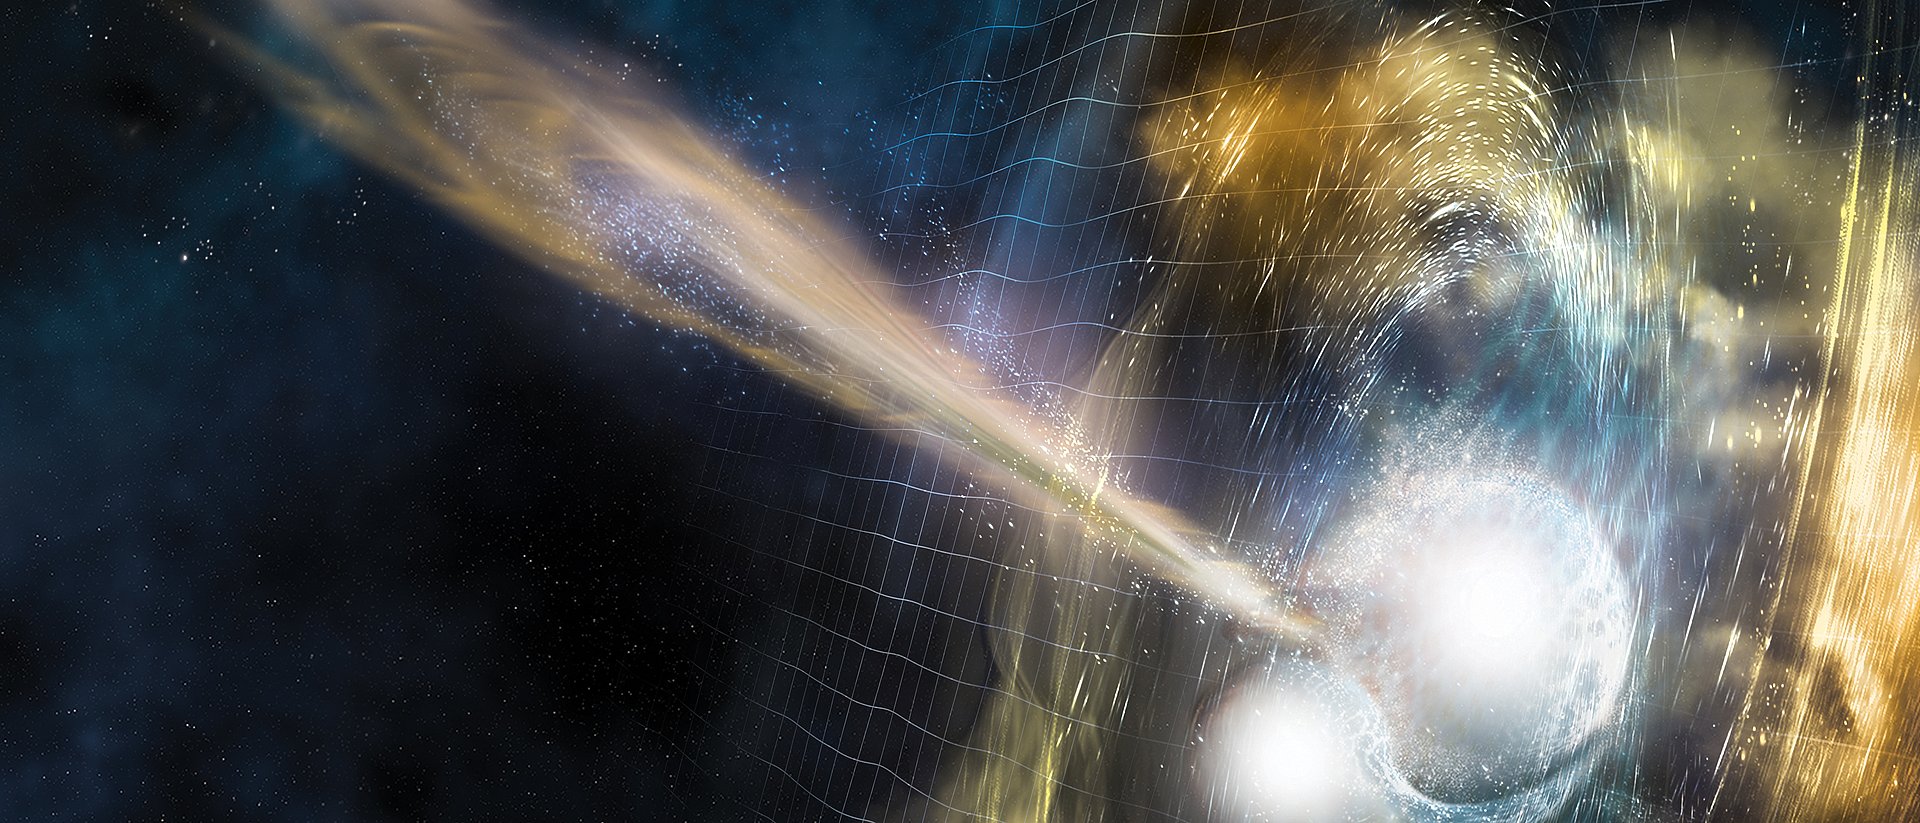 Illustration von zwei fusionierenden Neutronensternen. Aus der Kollision breiten sich Gravitationswellen aus, wenige Sekunden später ereignet sich ein Ausbruch von Gammastrahlen. Von den zusammenwachsenden Sternen werden wirbelnde Materialwolken ausgestoßen.